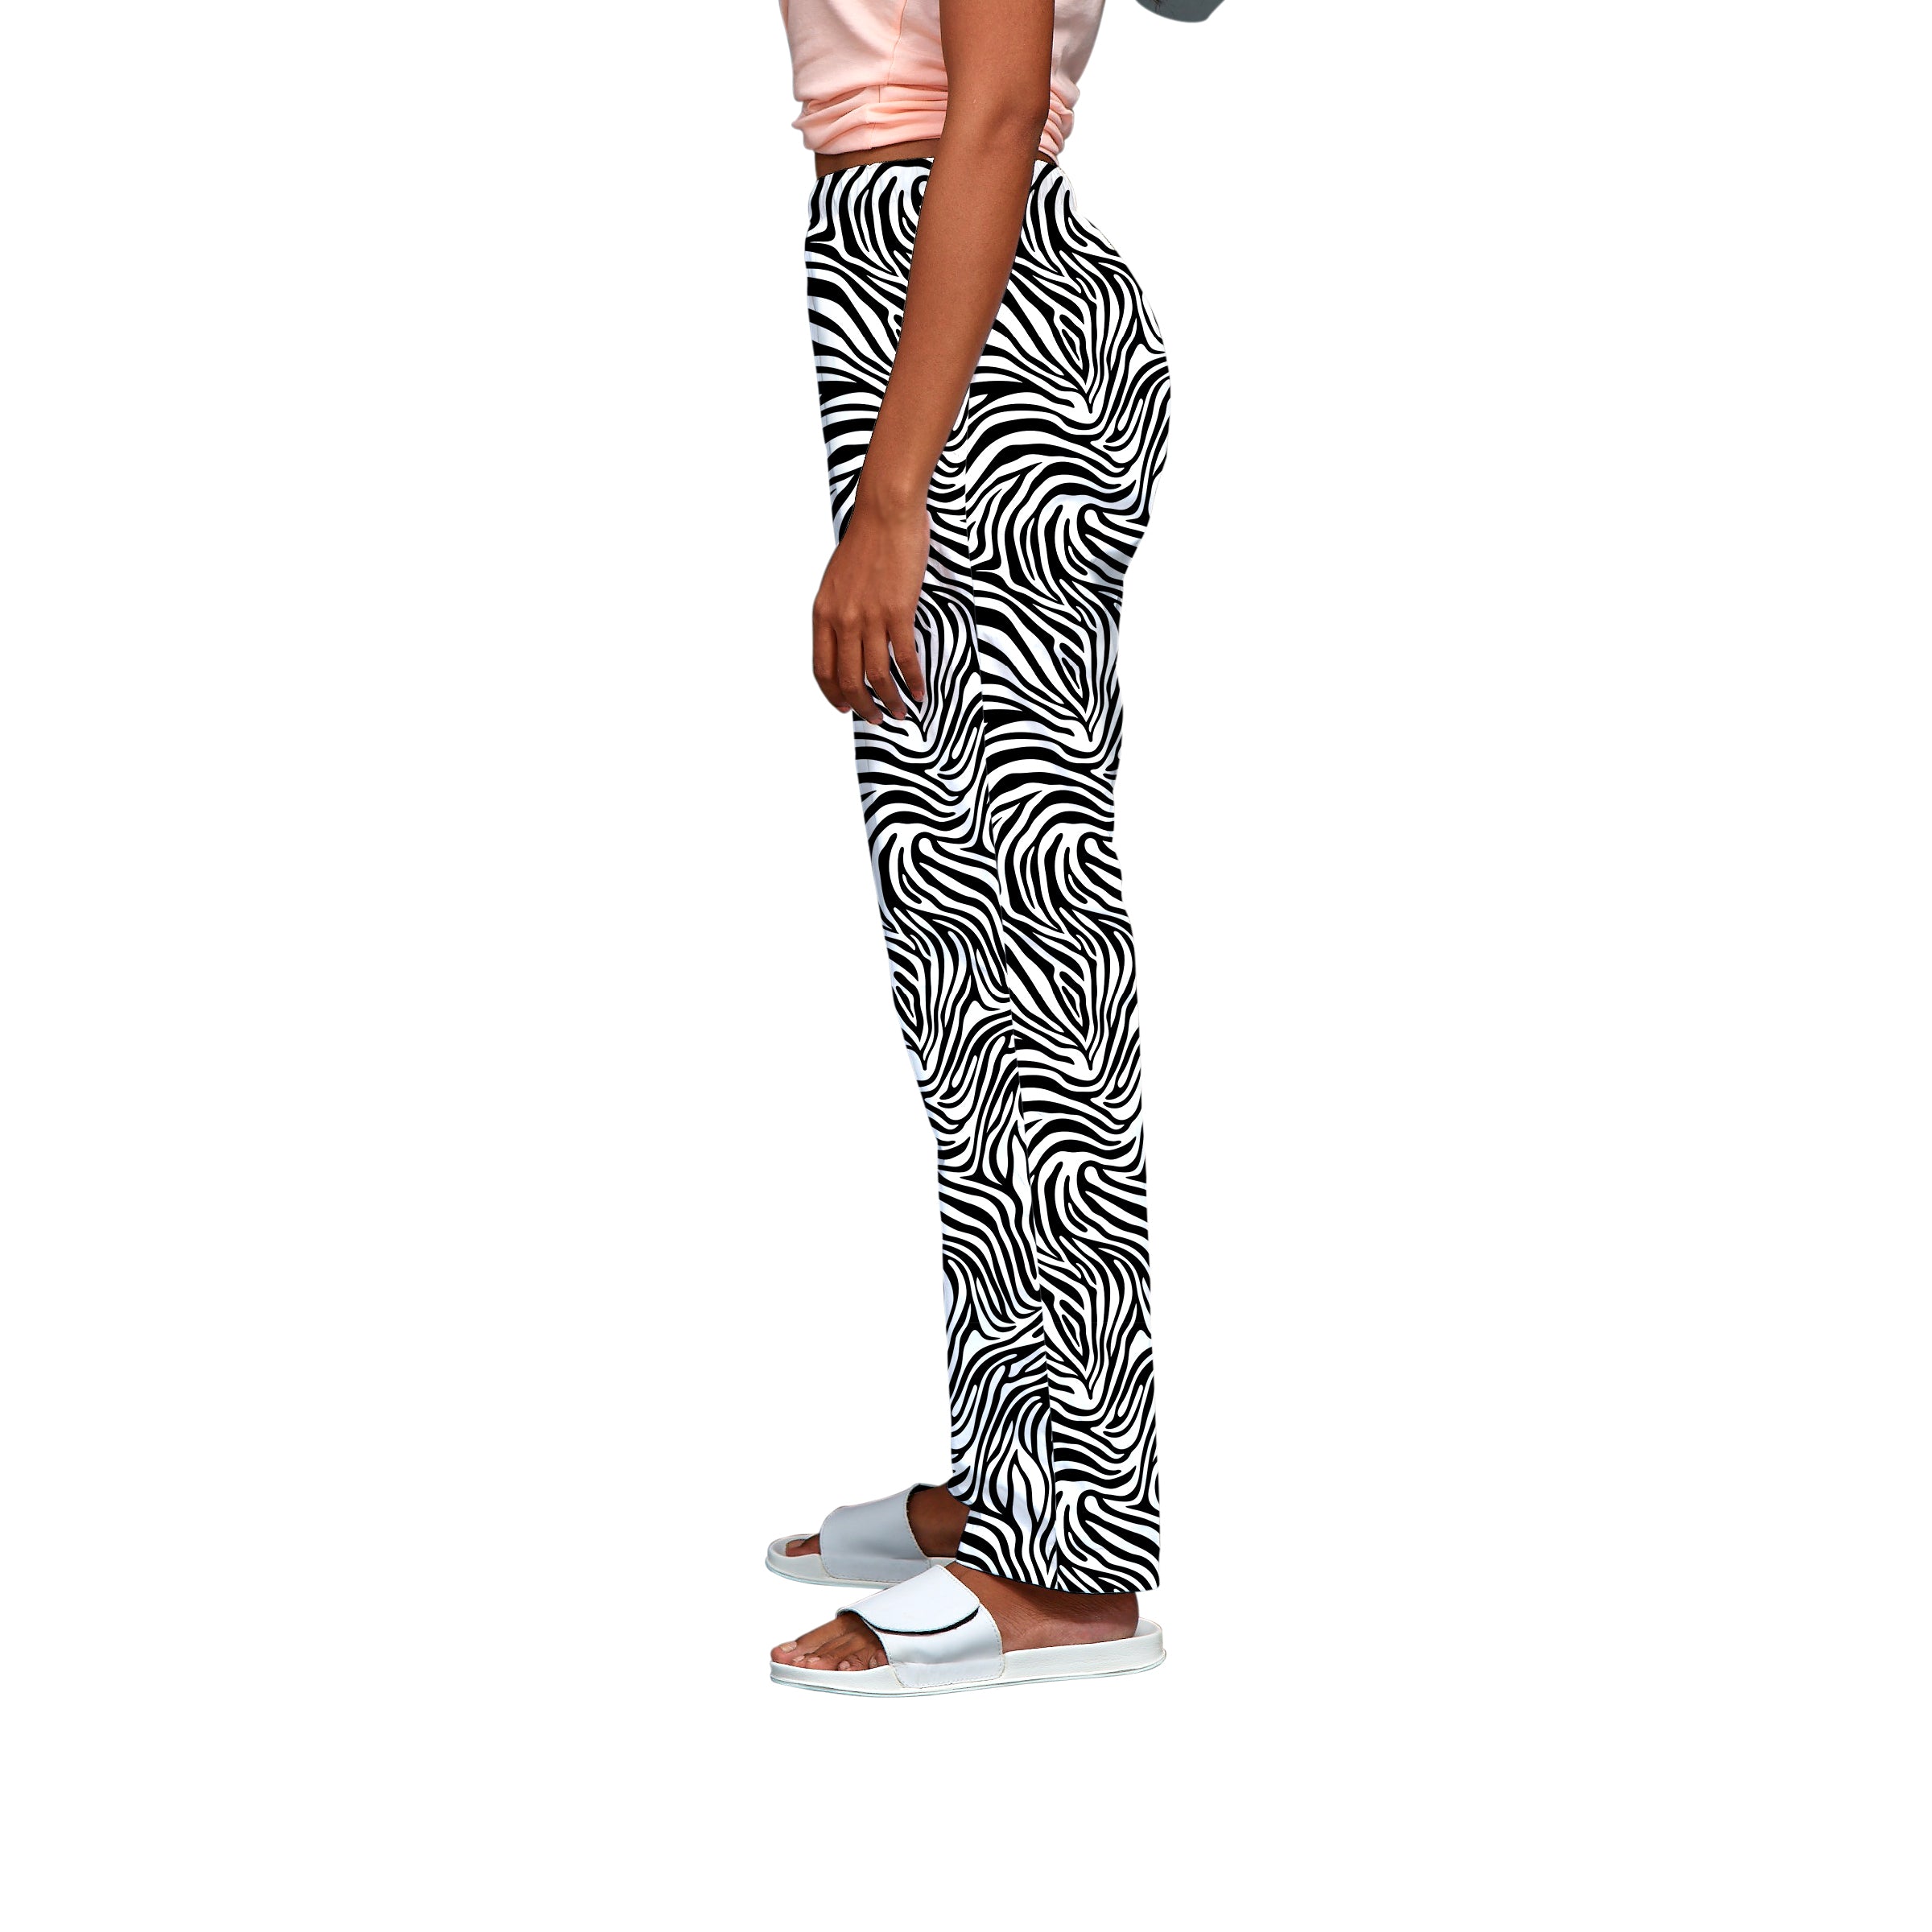 Zebra Skin Pyjama for Women